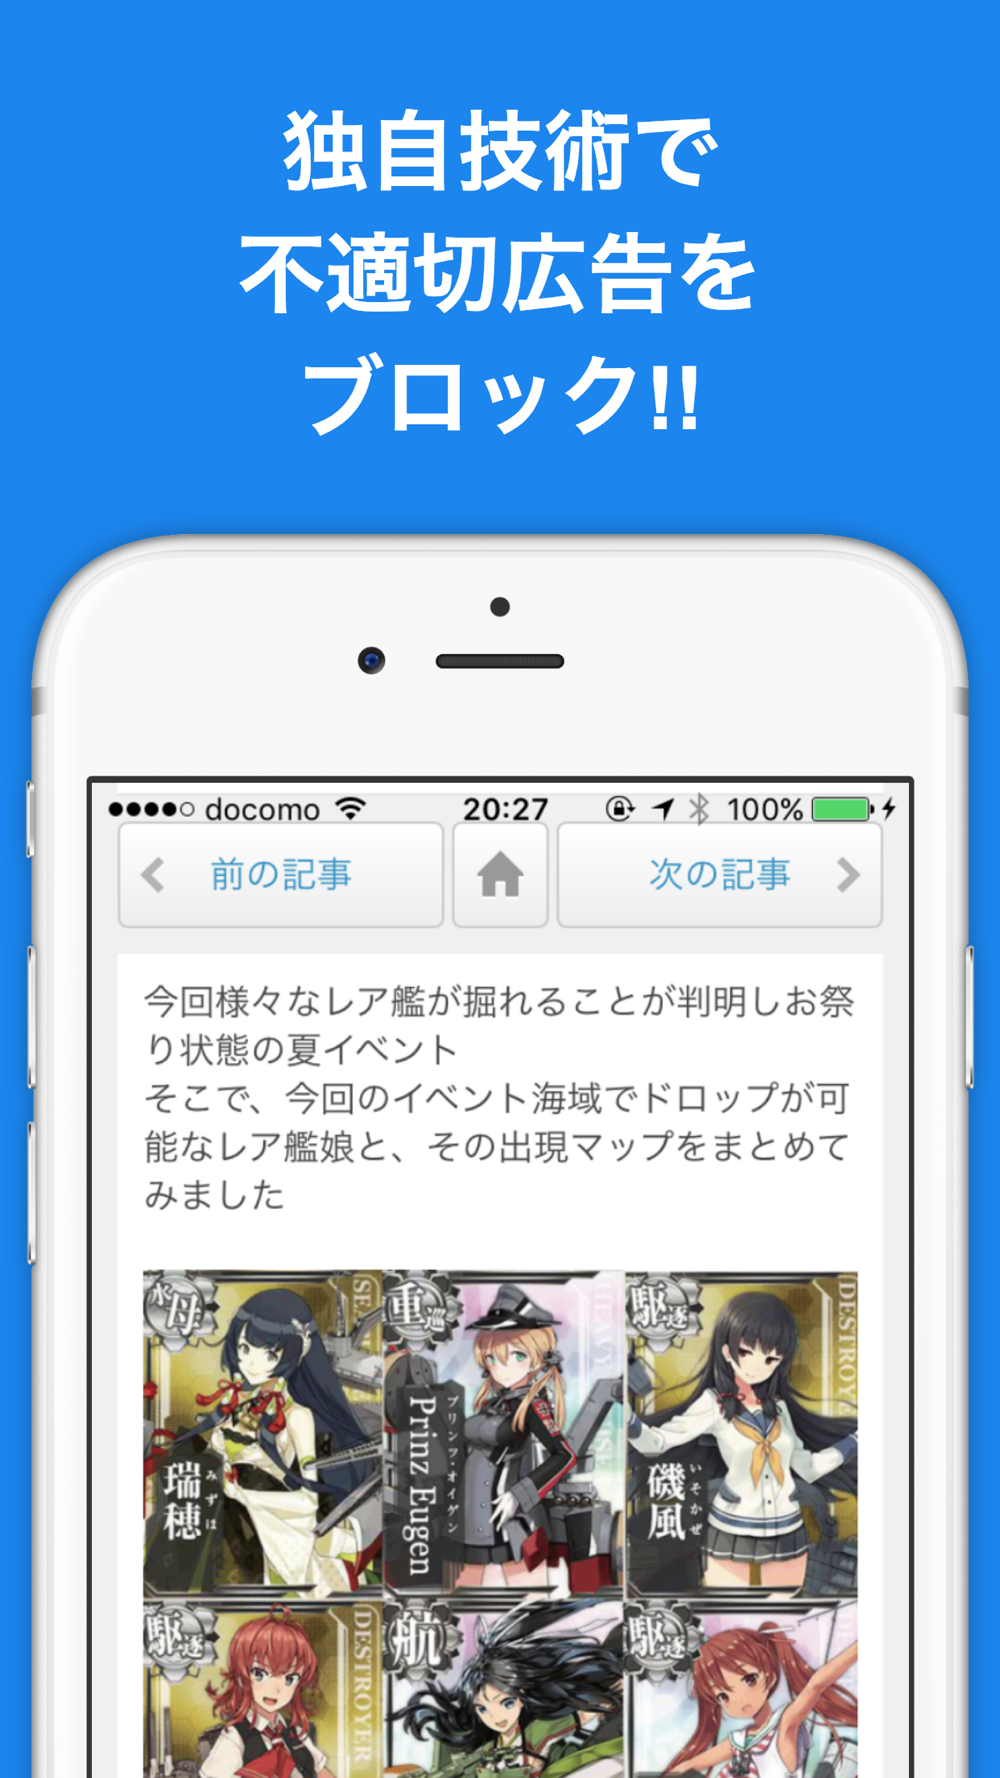 ブログまとめニュース速報 For 艦隊これくしょん艦これ Free Download App For Iphone Steprimo Com